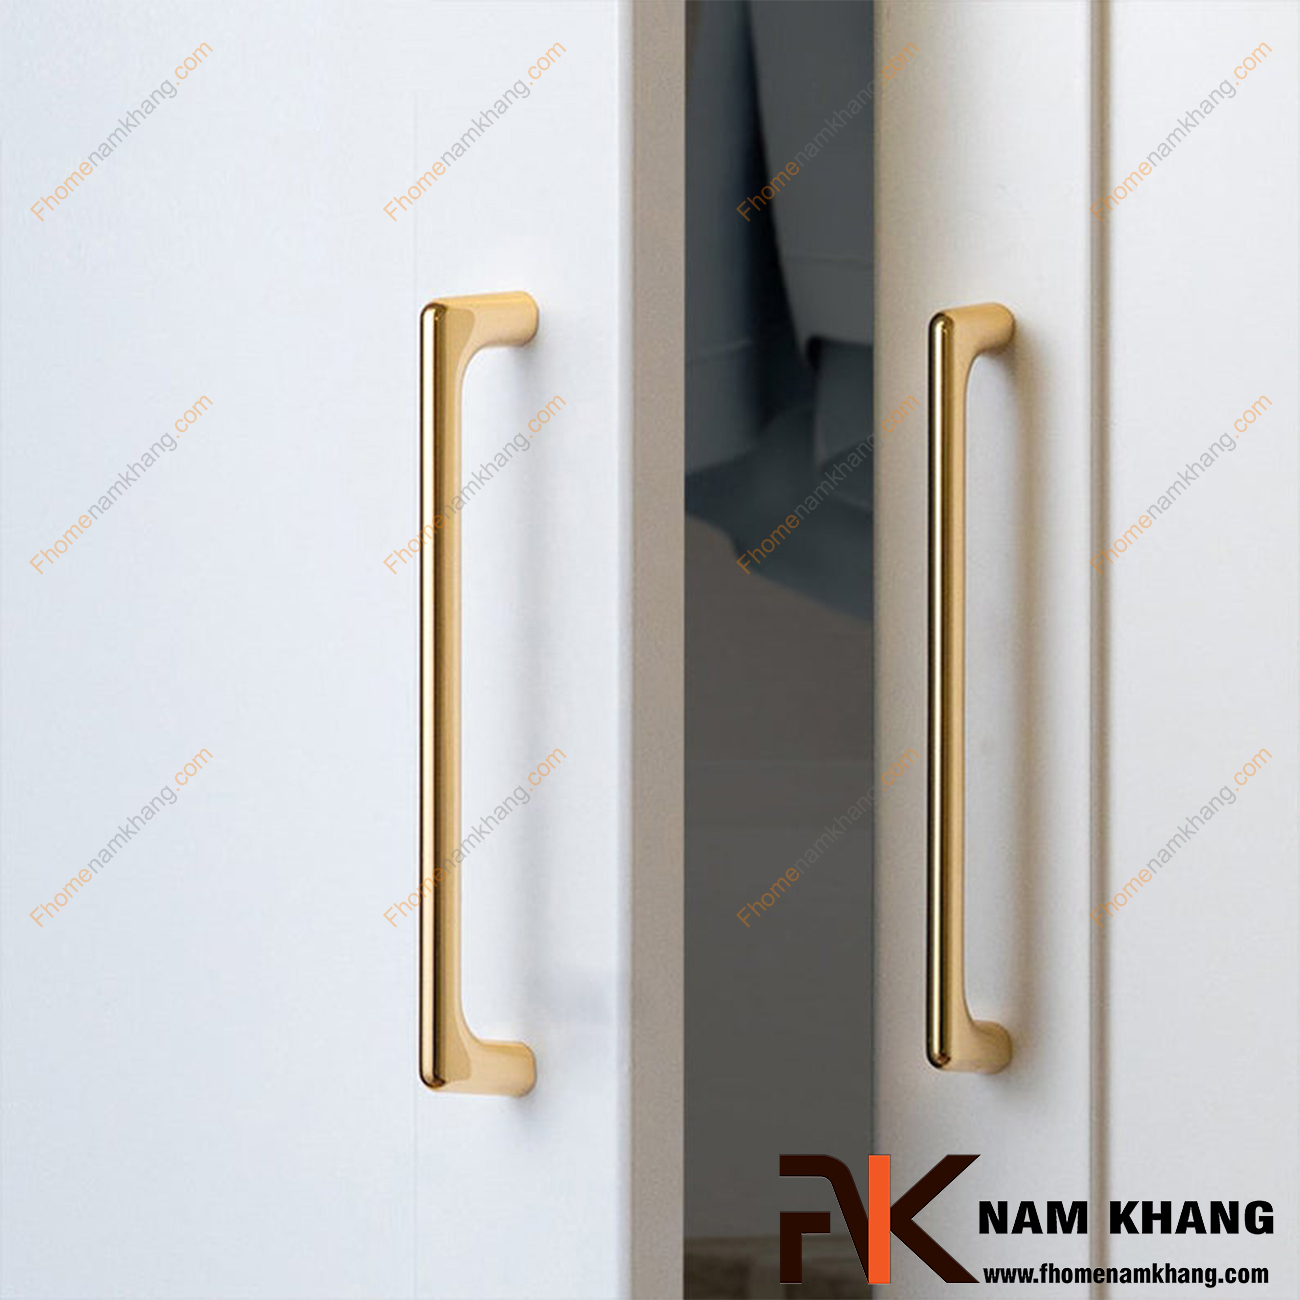 Tay nắm tủ dạng thanh tròn màu vàng NK211-V là dòng tay nắm tủ mang phong cách nhỏ gọn, tiện dụng dạng thanh tròn bằng vật liệu hợp kim cao cấp.